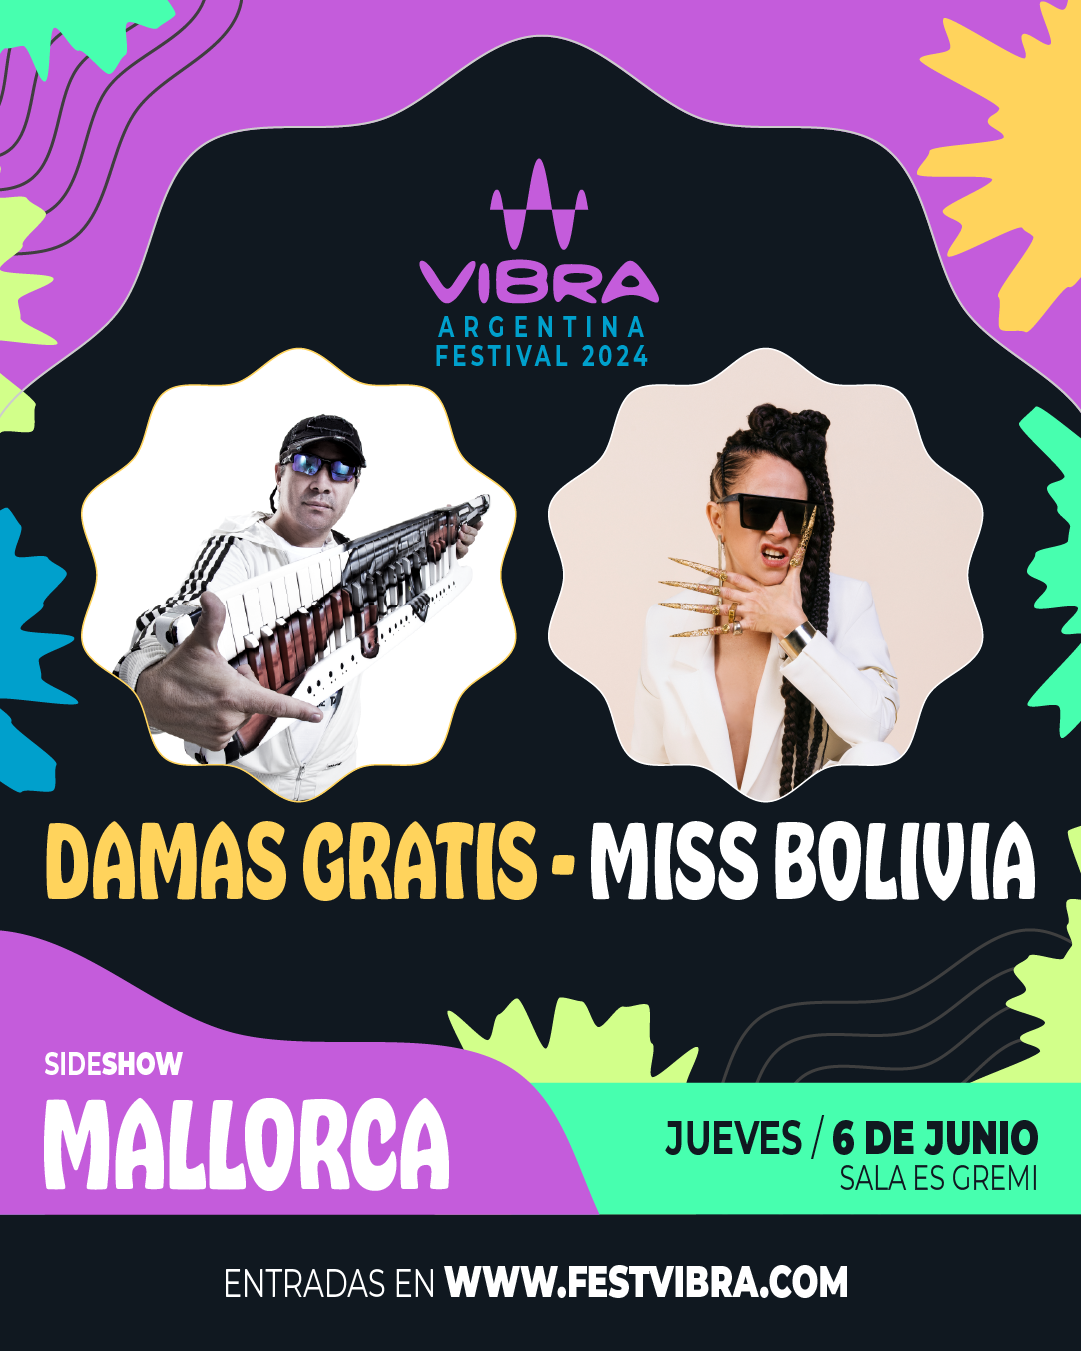 VIBRA ARGENTINA FESTIVAL 2024 en MALLORCA, sala es Gremi, Jueves 6 Junio, Damas Gratis y Miss Bolivia. Entradas y Info: www.festvibra.com